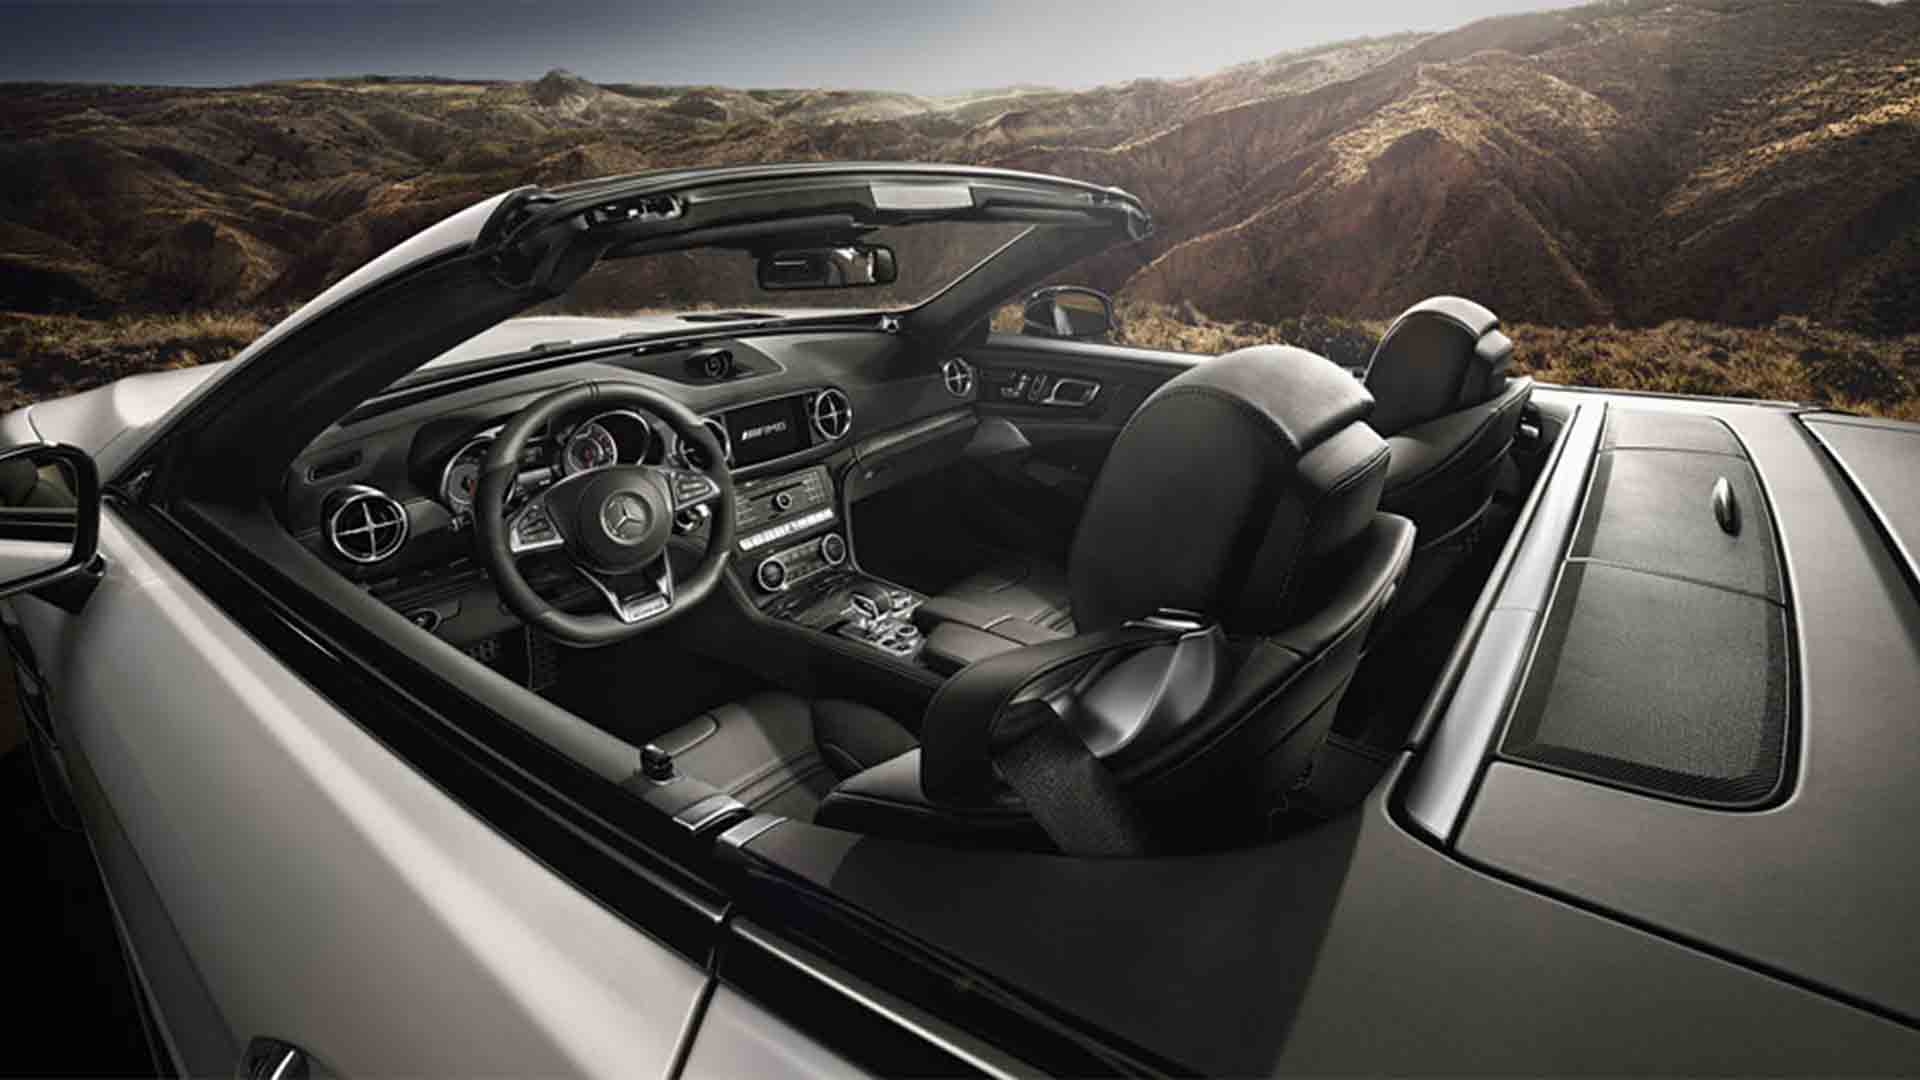 La evolución de la excelencia: Mercedes Benz SL 63 AMG ... - Telemundo